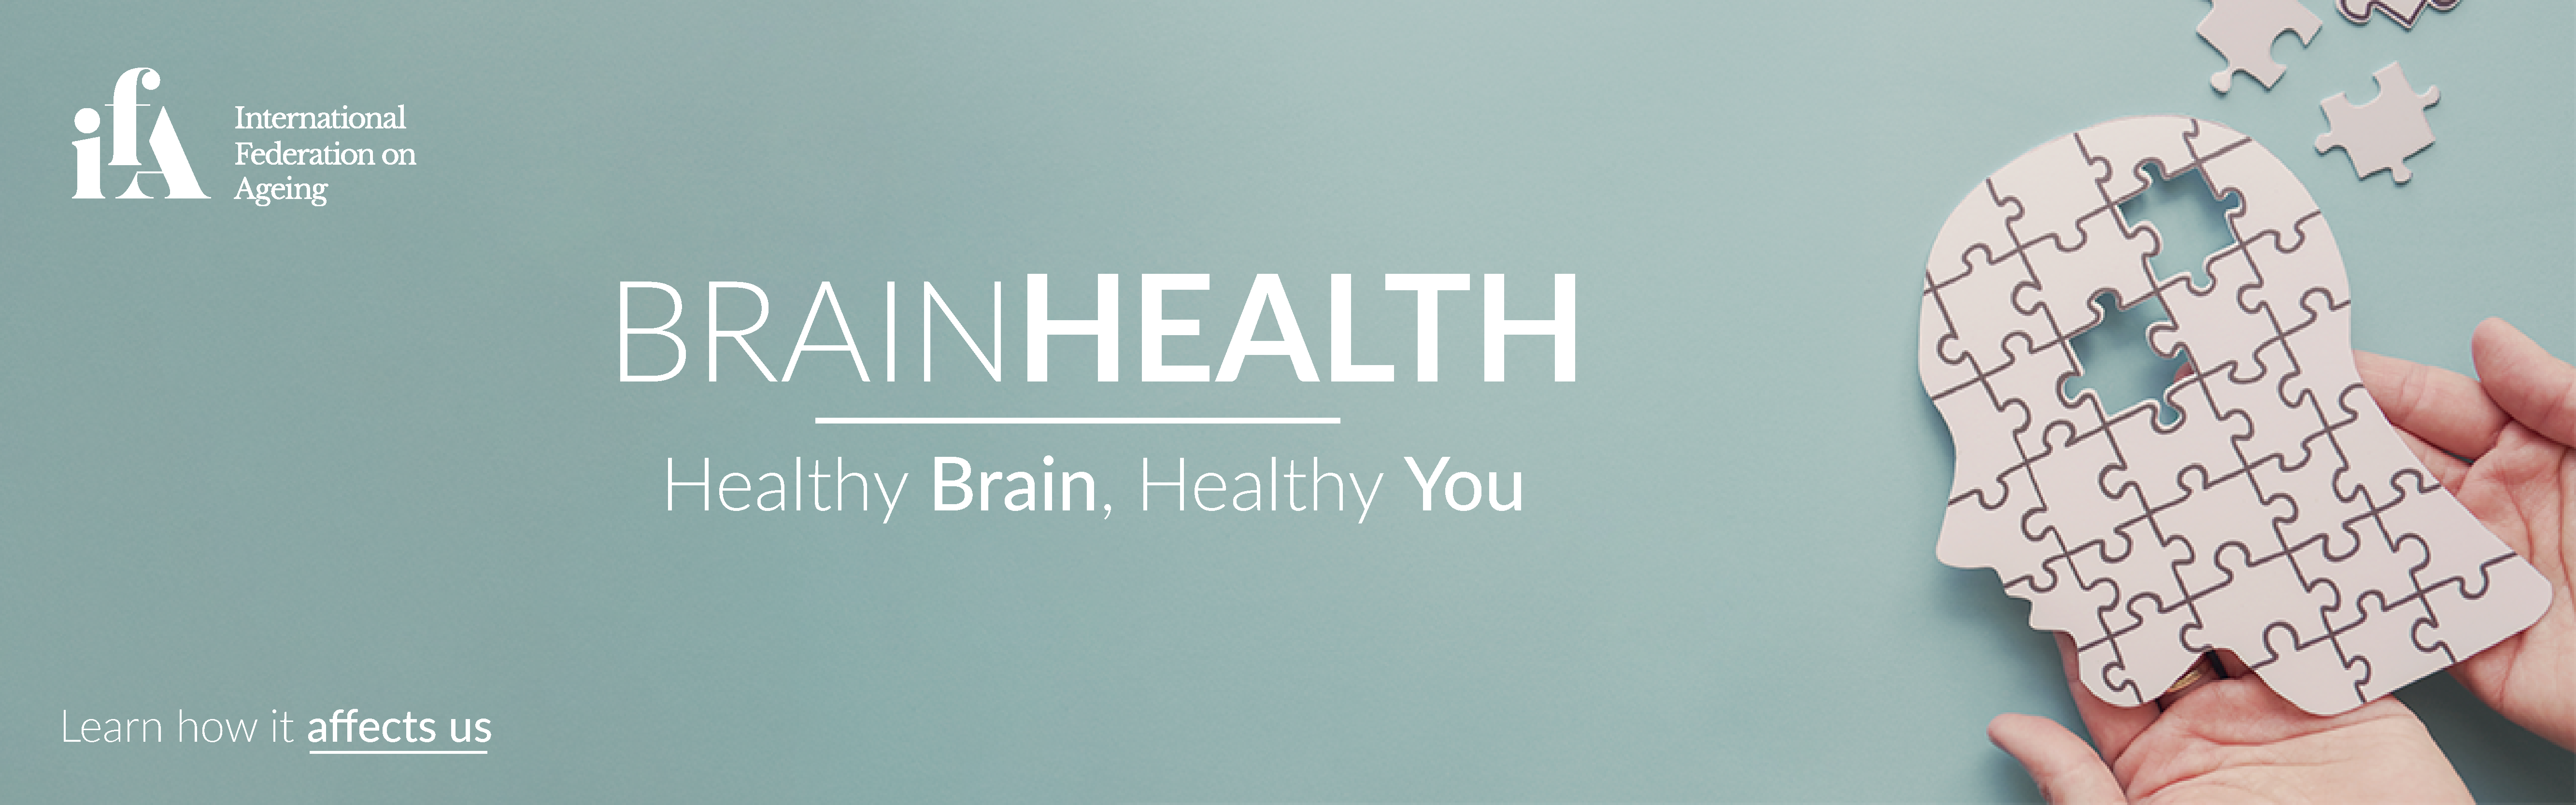 Brain Health banner